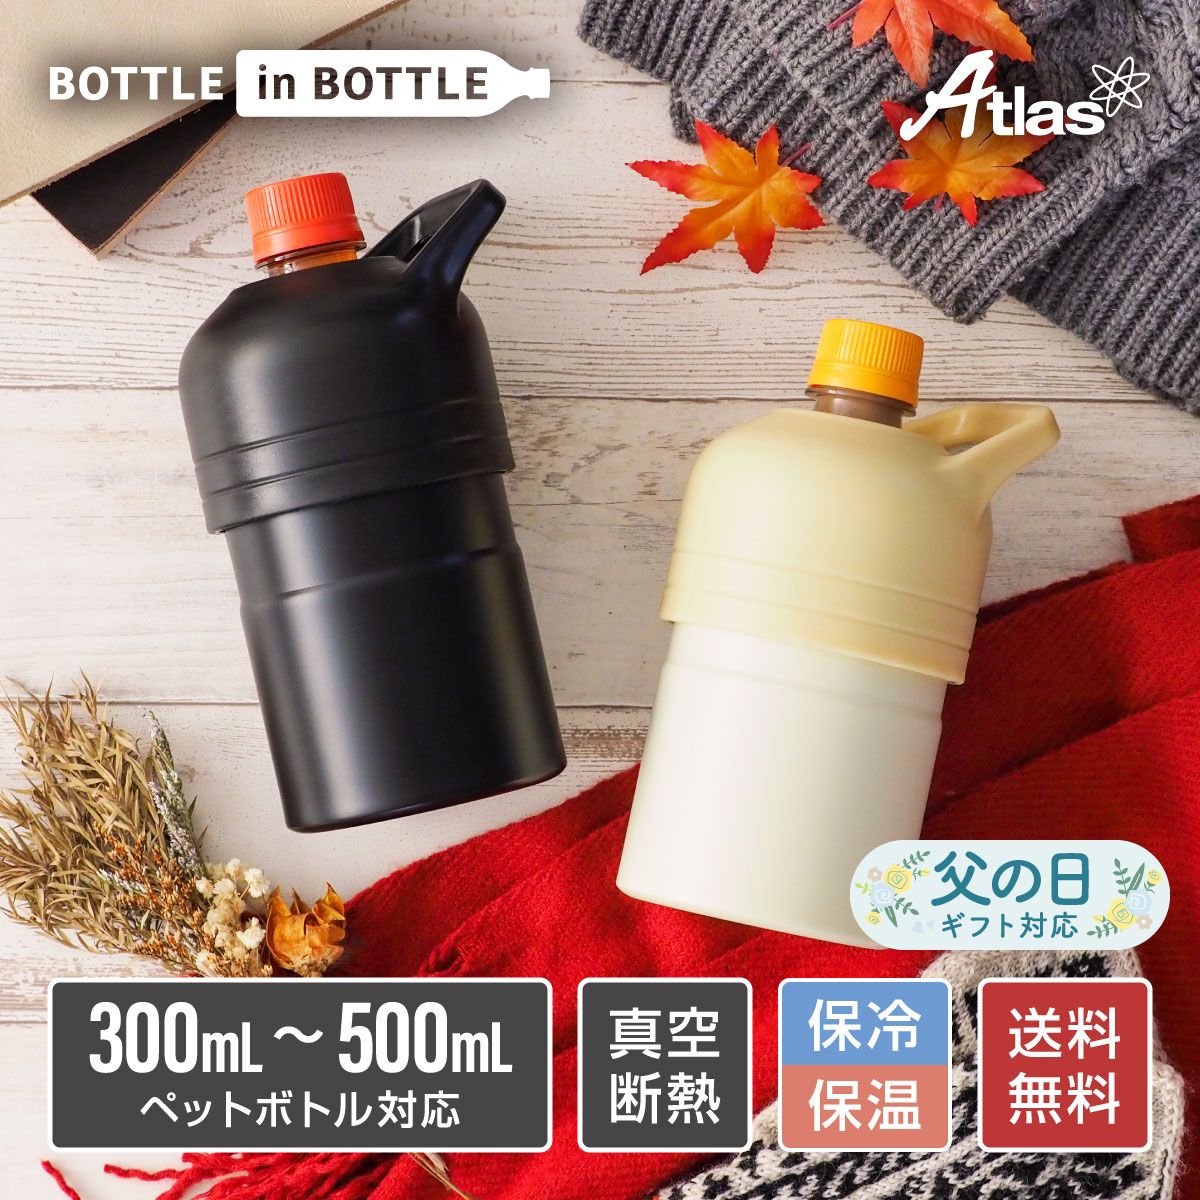 アトラス ペットボトルホルダー ボトルインボトル 300ml 500ml 保温 保冷 真空断熱 ホット用 背の低いペットボトル用 ステンレス ボトルインボトル ミニサイズ ハンドル付き ABIB-F